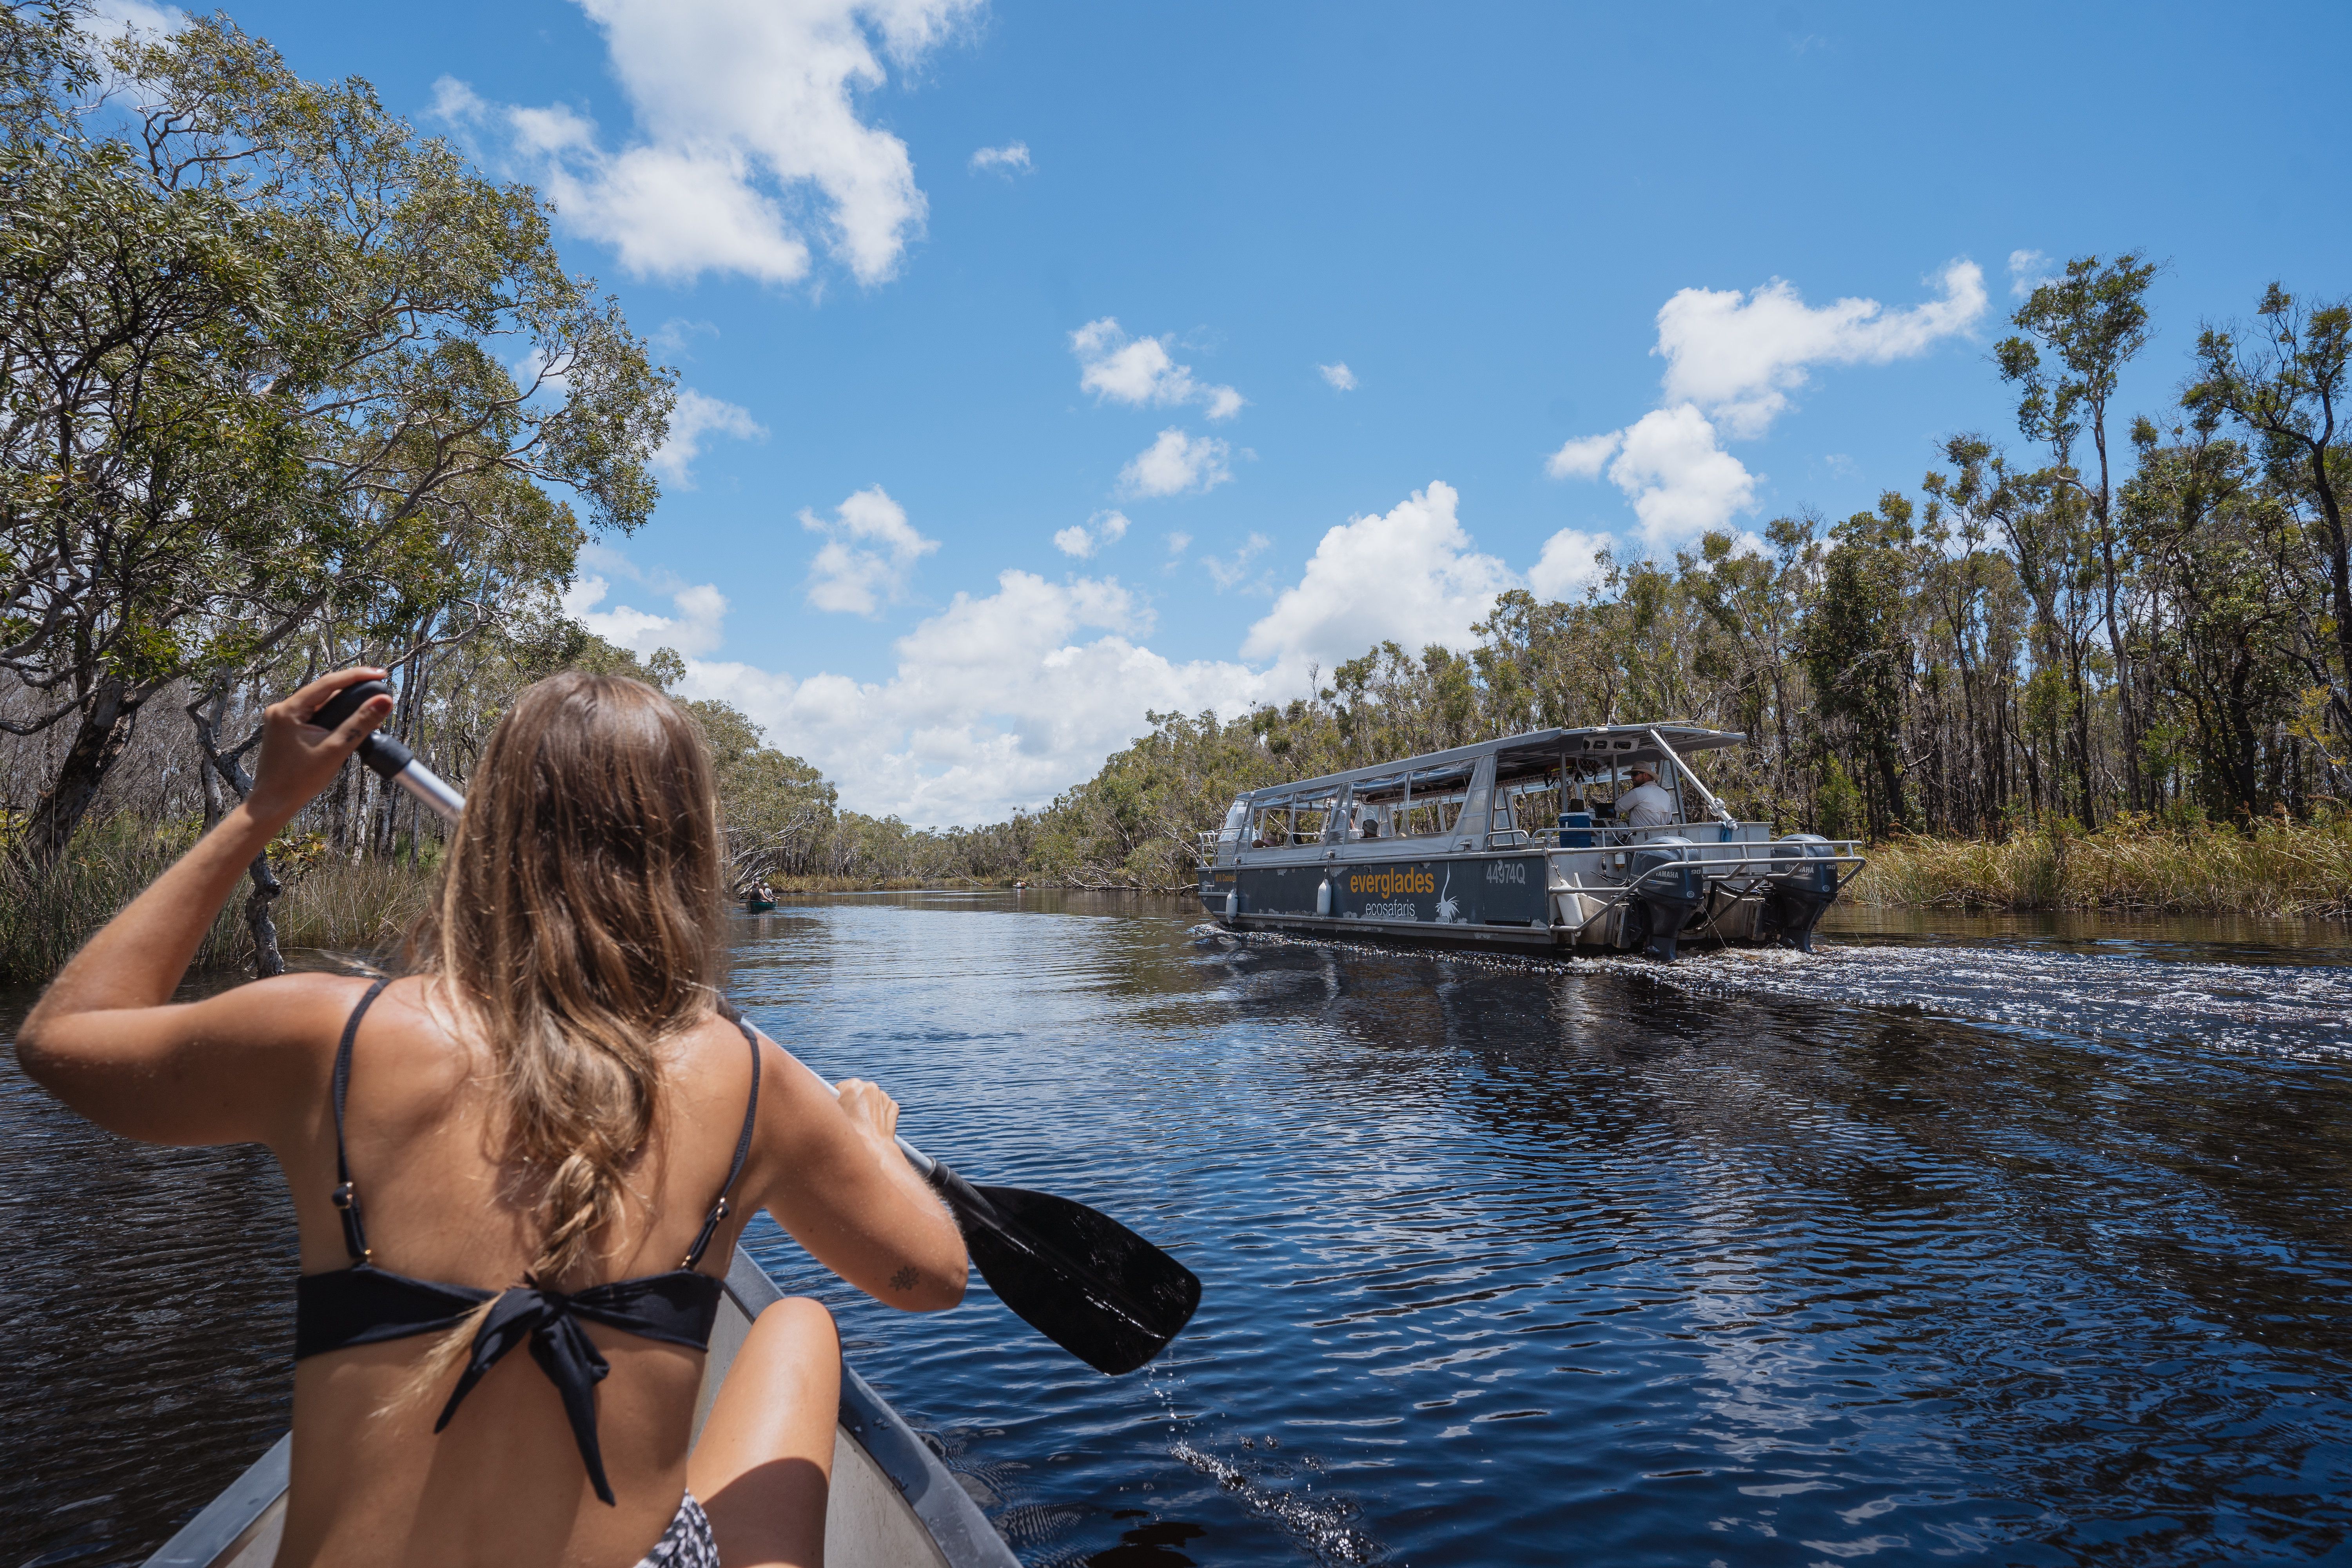 Girl In Canoe And Boat In Background